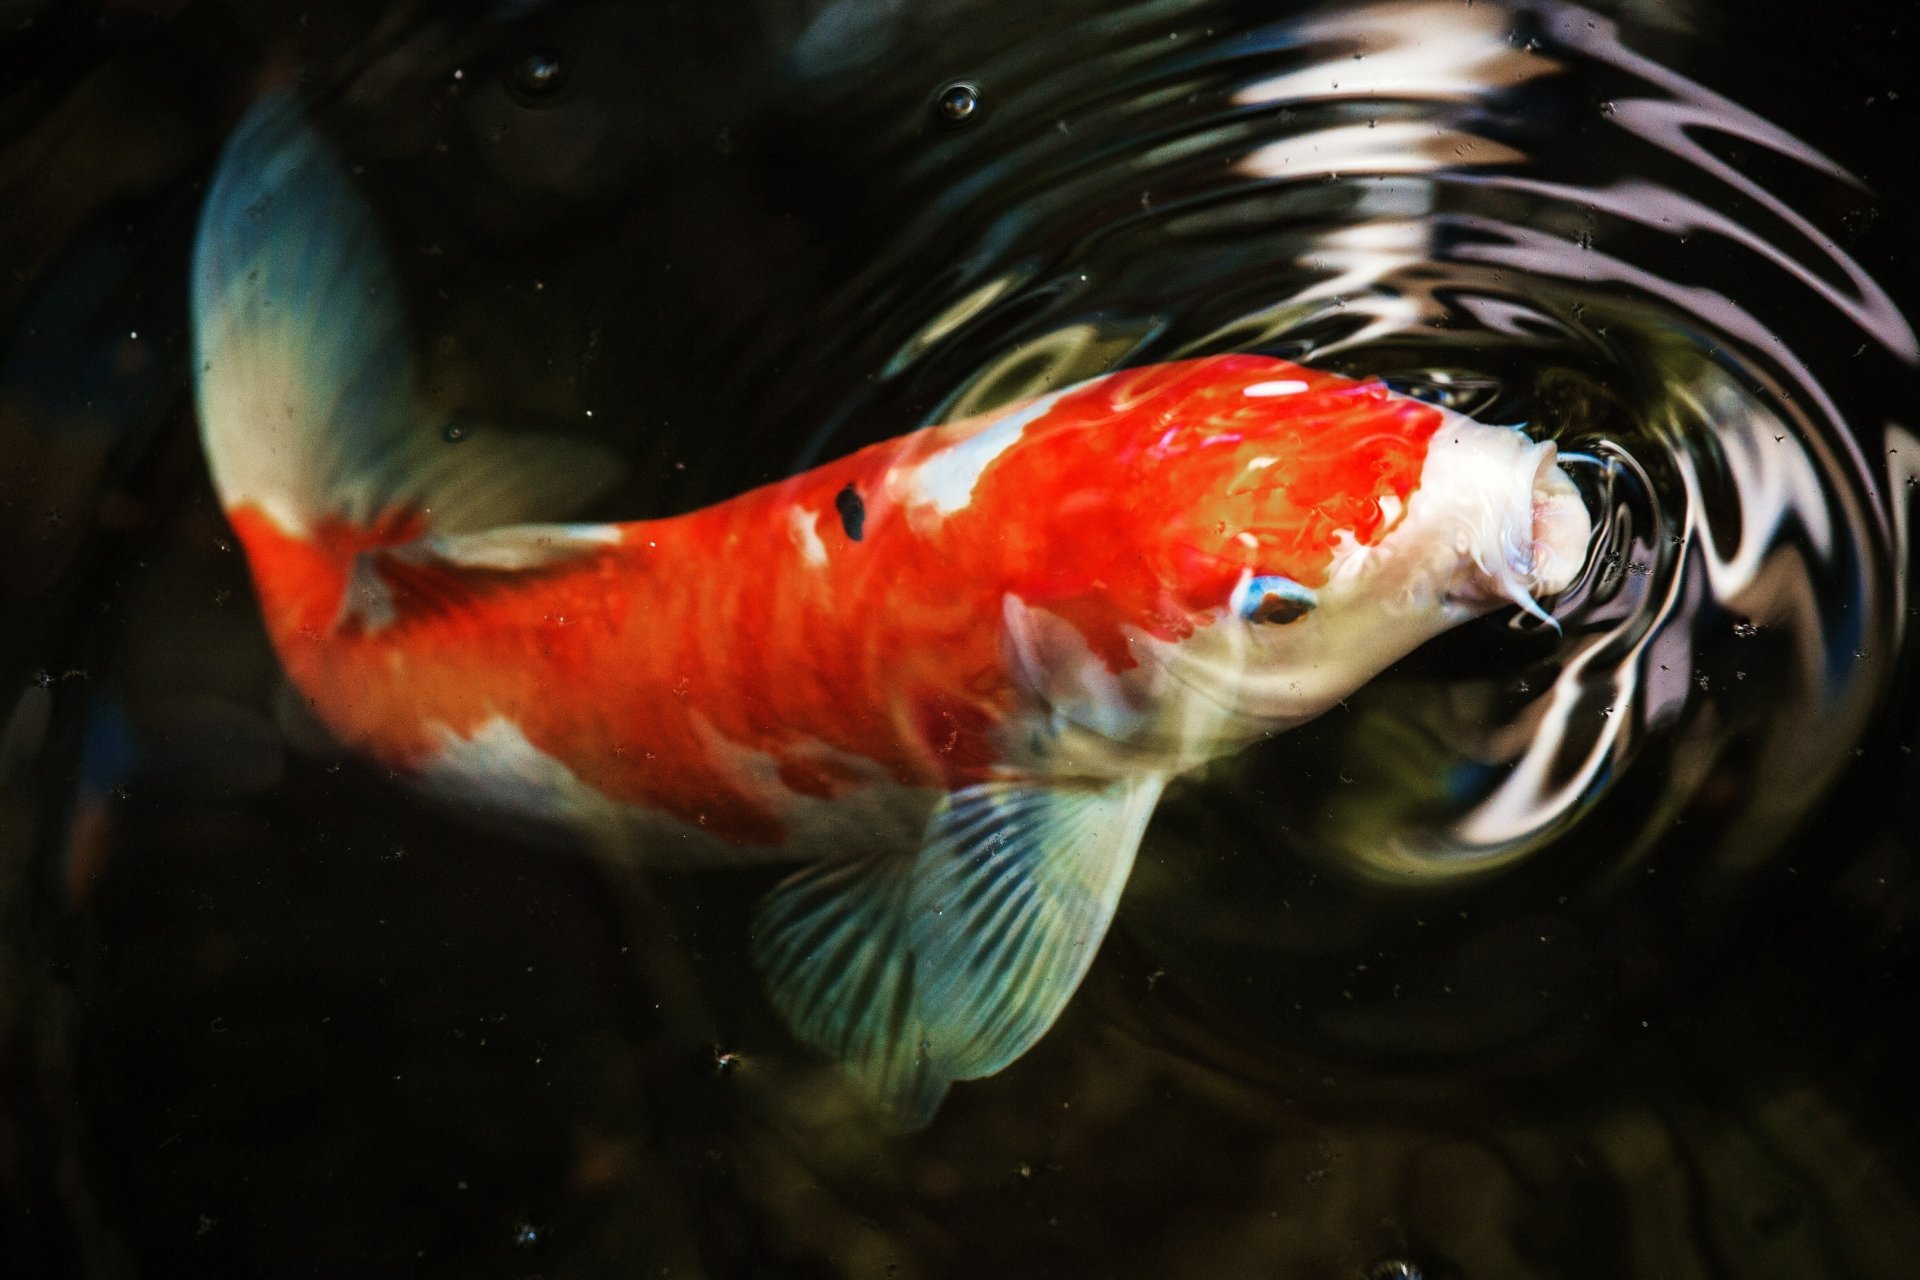 Hình nền 4K cá Koi với chất lượng hình ảnh cực cao sẽ đưa bạn đến gần hơn với vẻ đẹp trang trí của các loài cá trong các vườn tượng trưng. Mang đậm nét đặc trưng của nghệ thuật kiến trúc Nhật Bản, bức ảnh này hoàn toàn xứng đáng để bạn trải nghiệm.